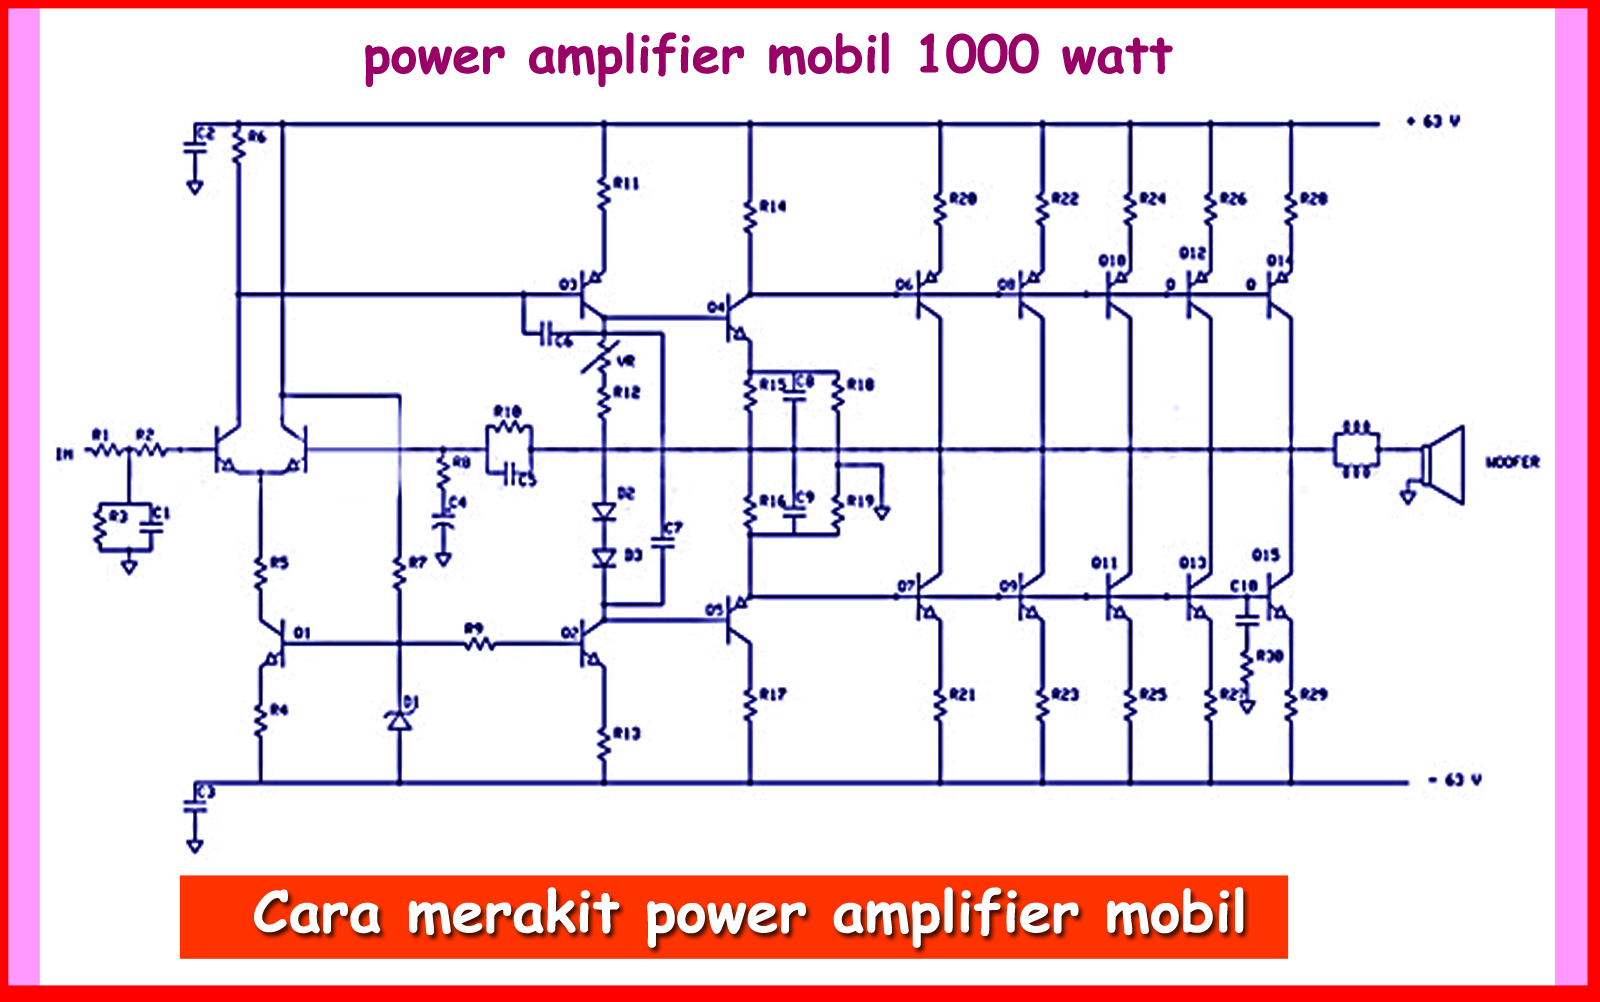 Cara Merakit Power Amplifier Mobil 1000 Watt Otokawancom Cara